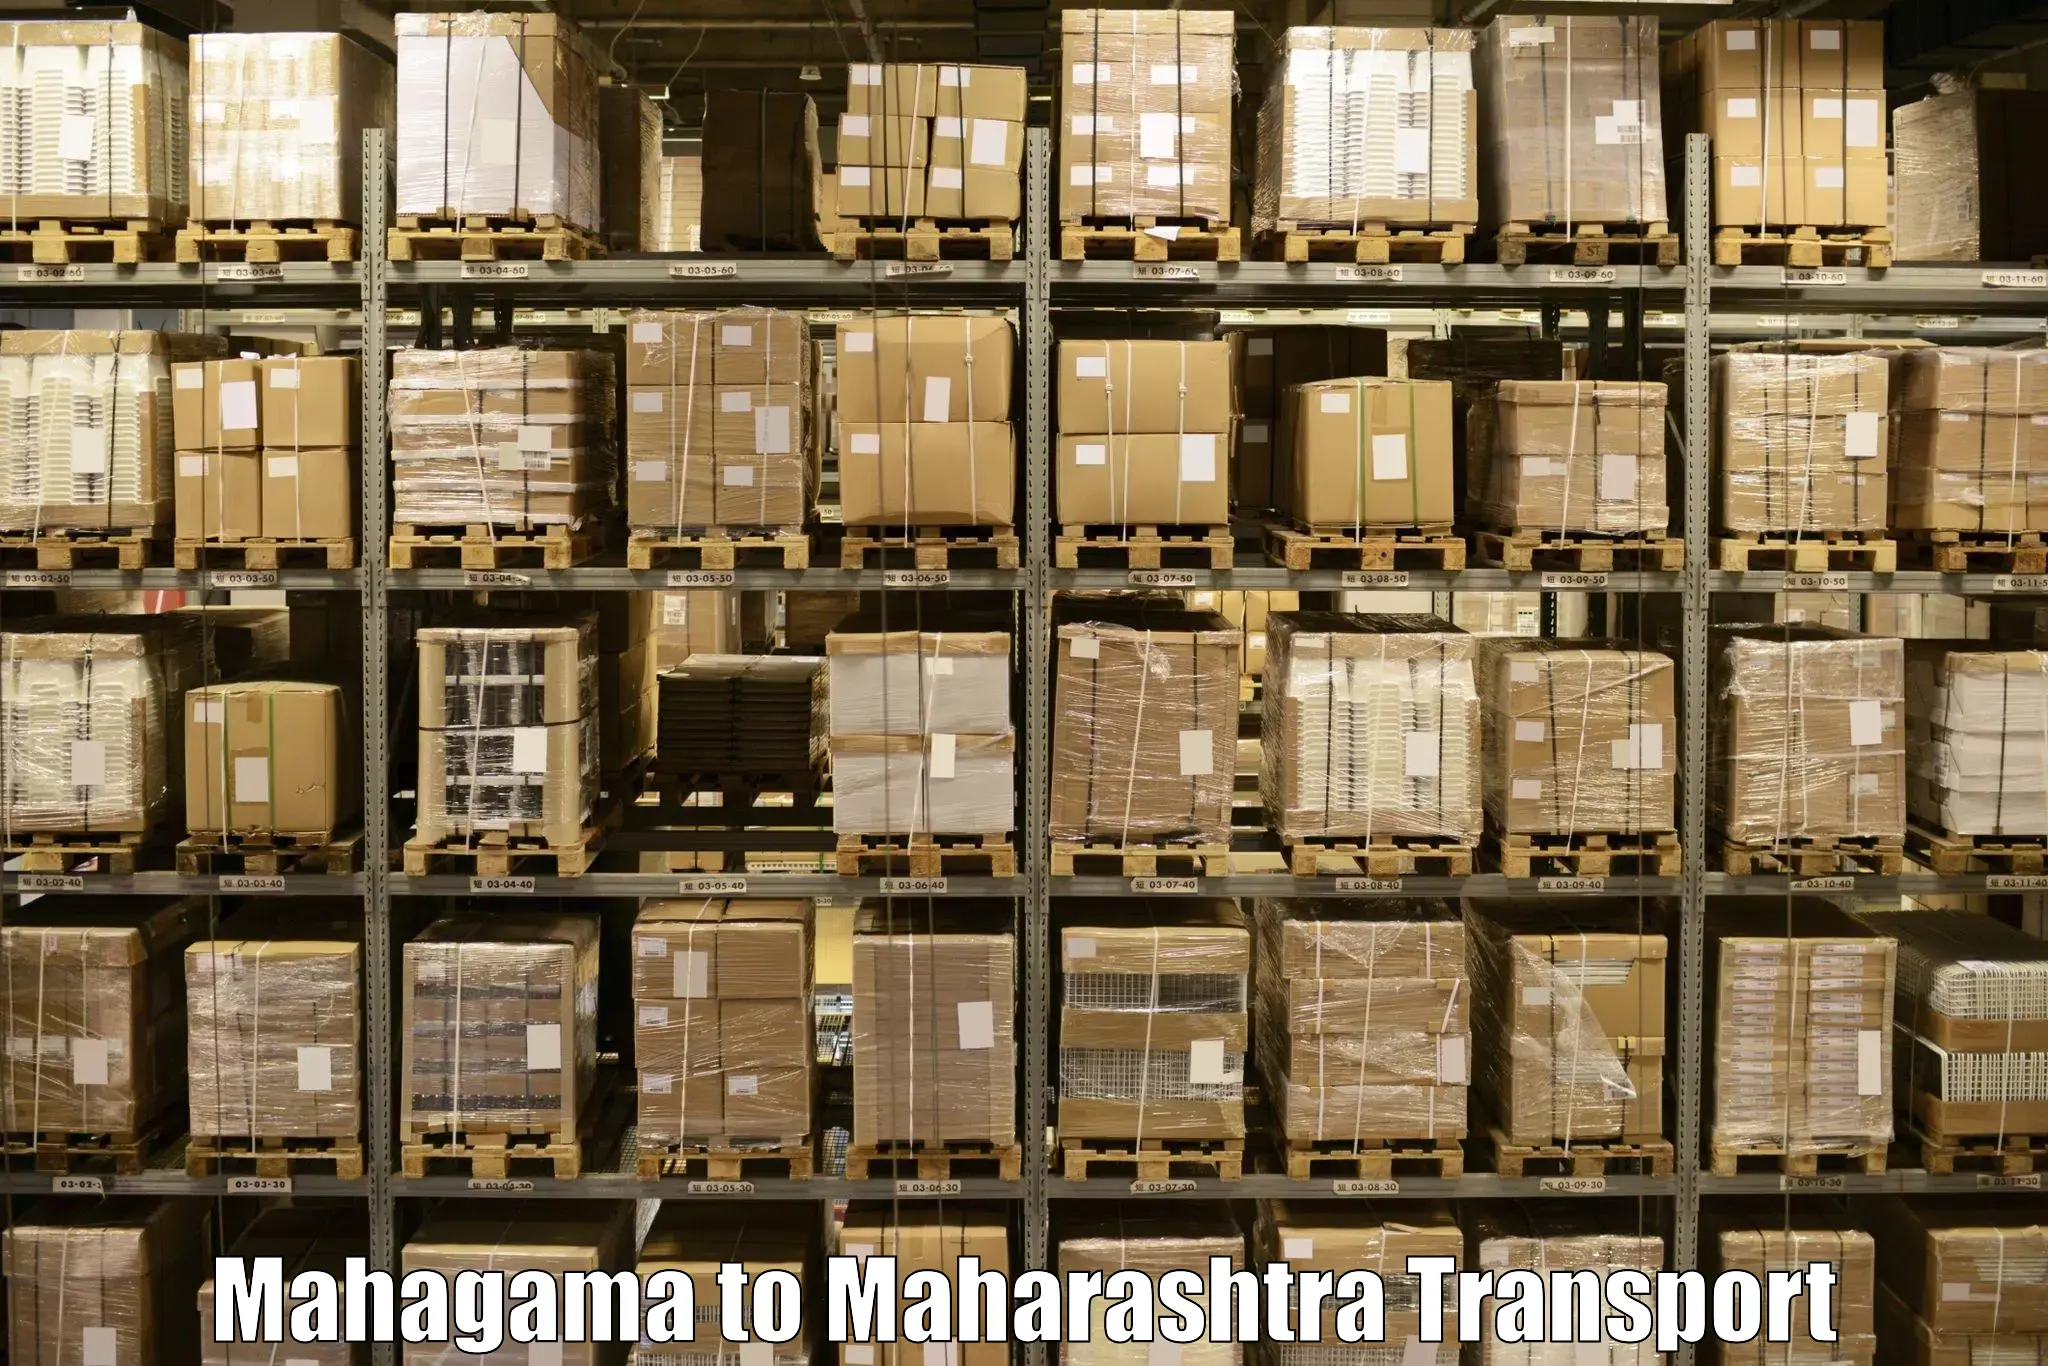 Pick up transport service Mahagama to Maharashtra